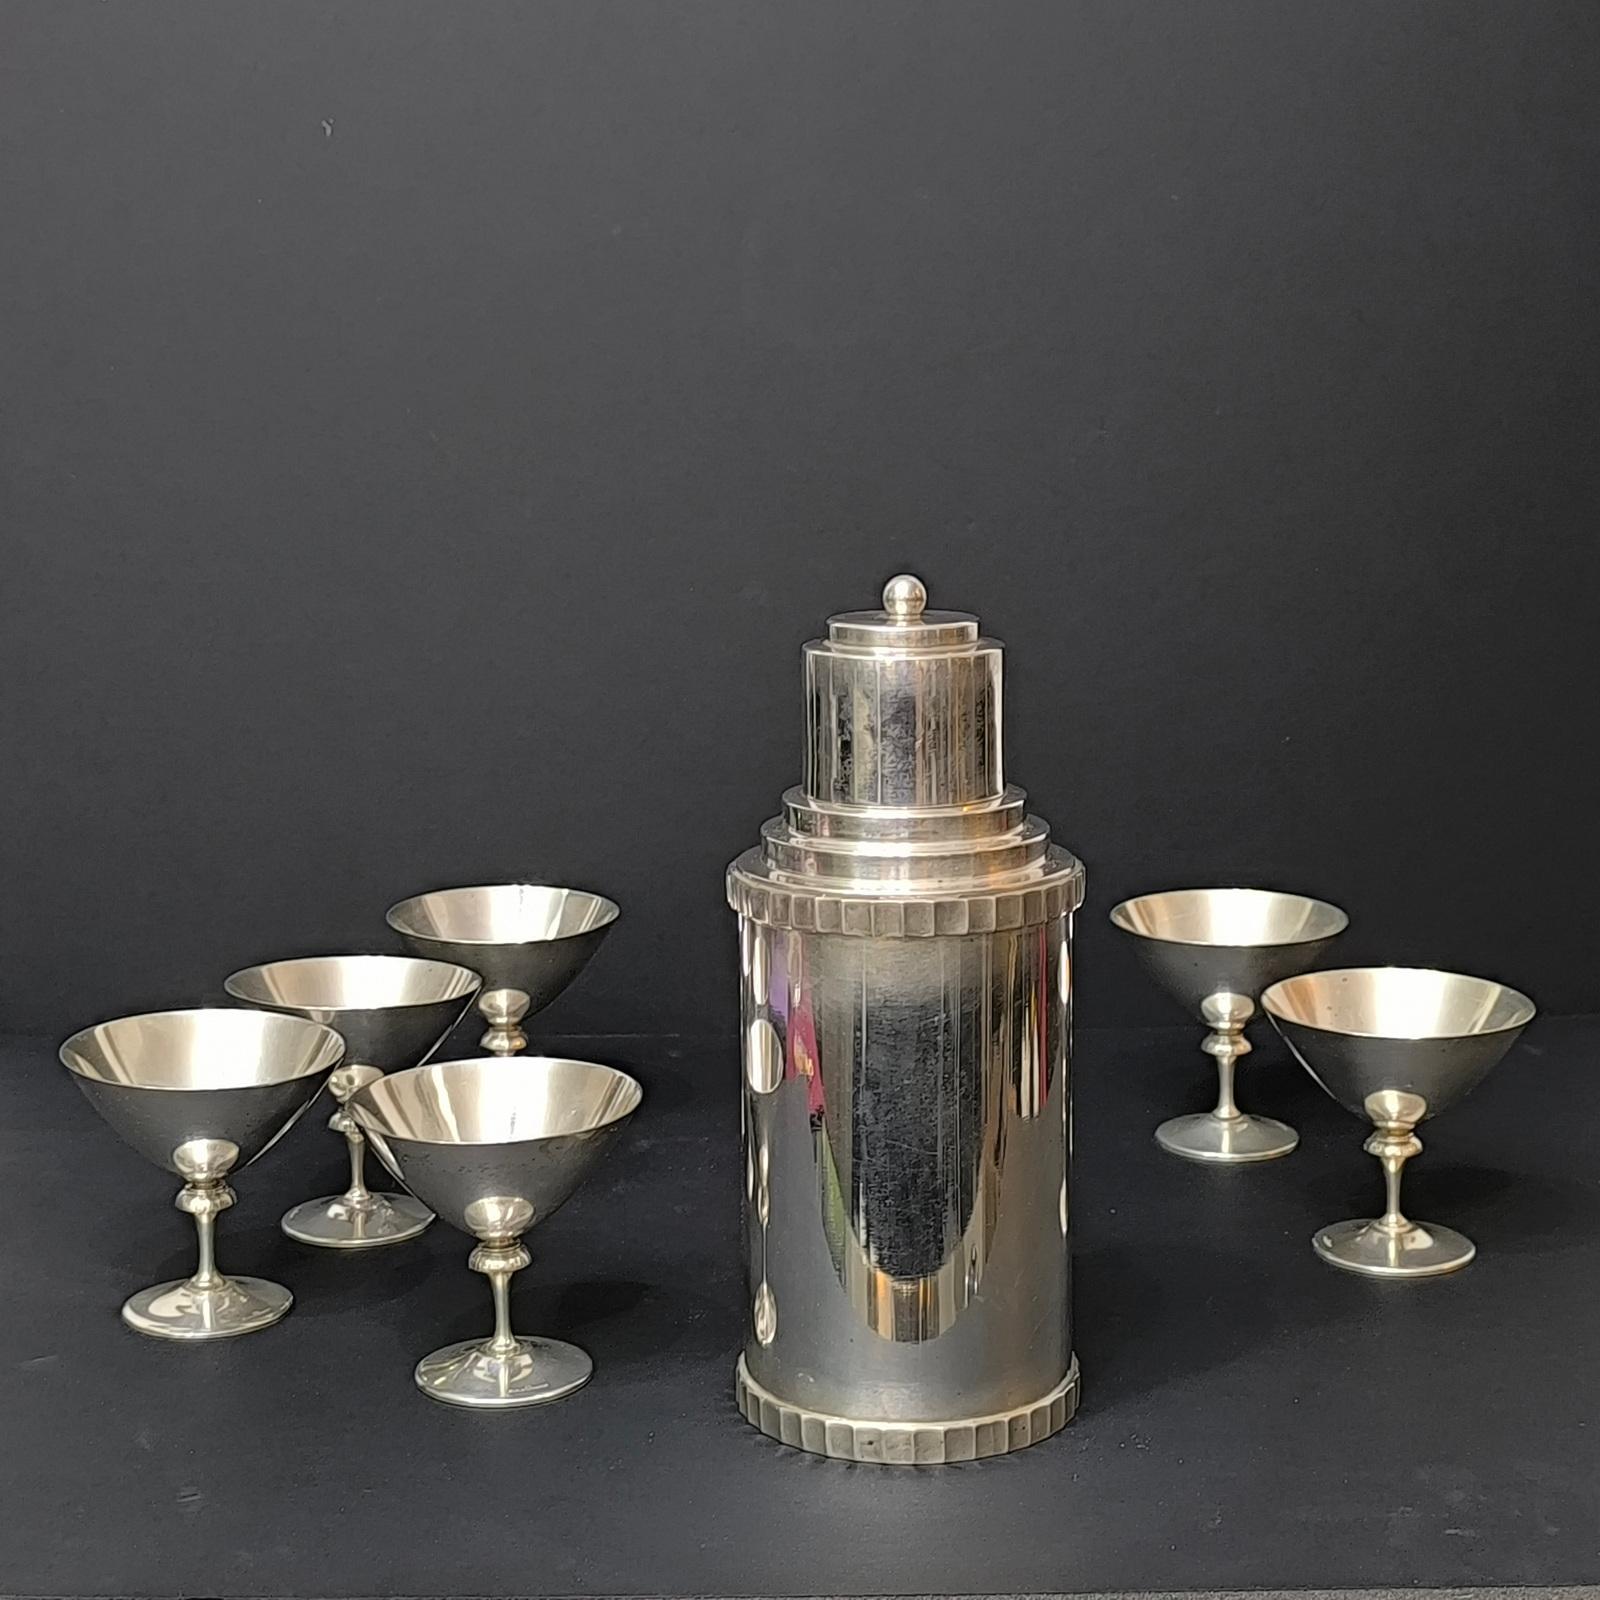 Art Deco Danish Silver Plated Cocktail Shaker und sechs GAB Martini Gläser.
Ein wunderschönes Bar-Set bestehend aus einem schweren, hochwertigen dänischen versilberten Cocktail-Shaker und sechs Martini-Stielgläsern von GAB Sweden.
Alle sind in einem